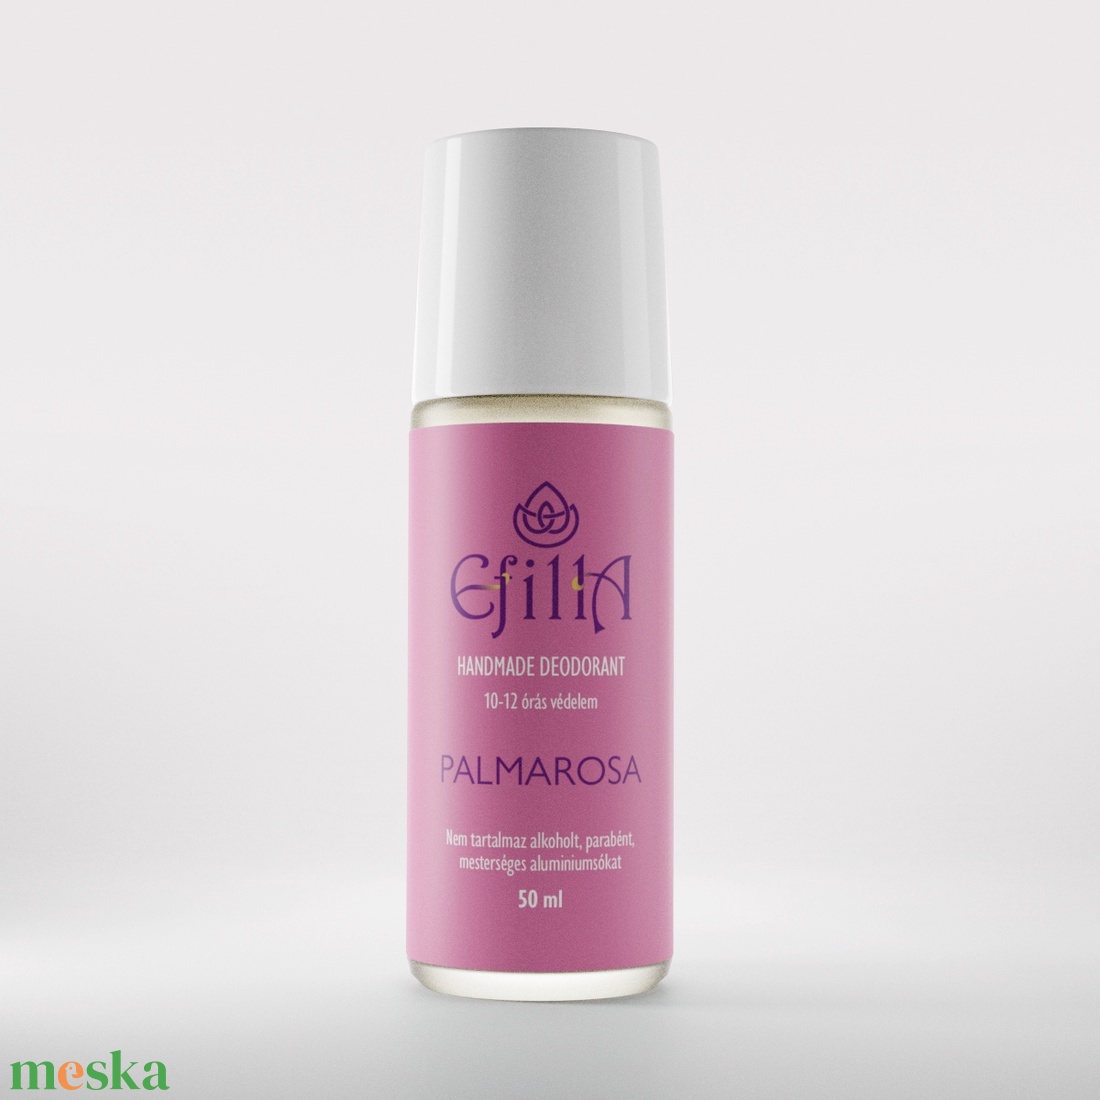 Palmarosa natúr folyékony golyós dezodor allergénmentes illattal - szépségápolás - dezodor & parfüm - Meska.hu